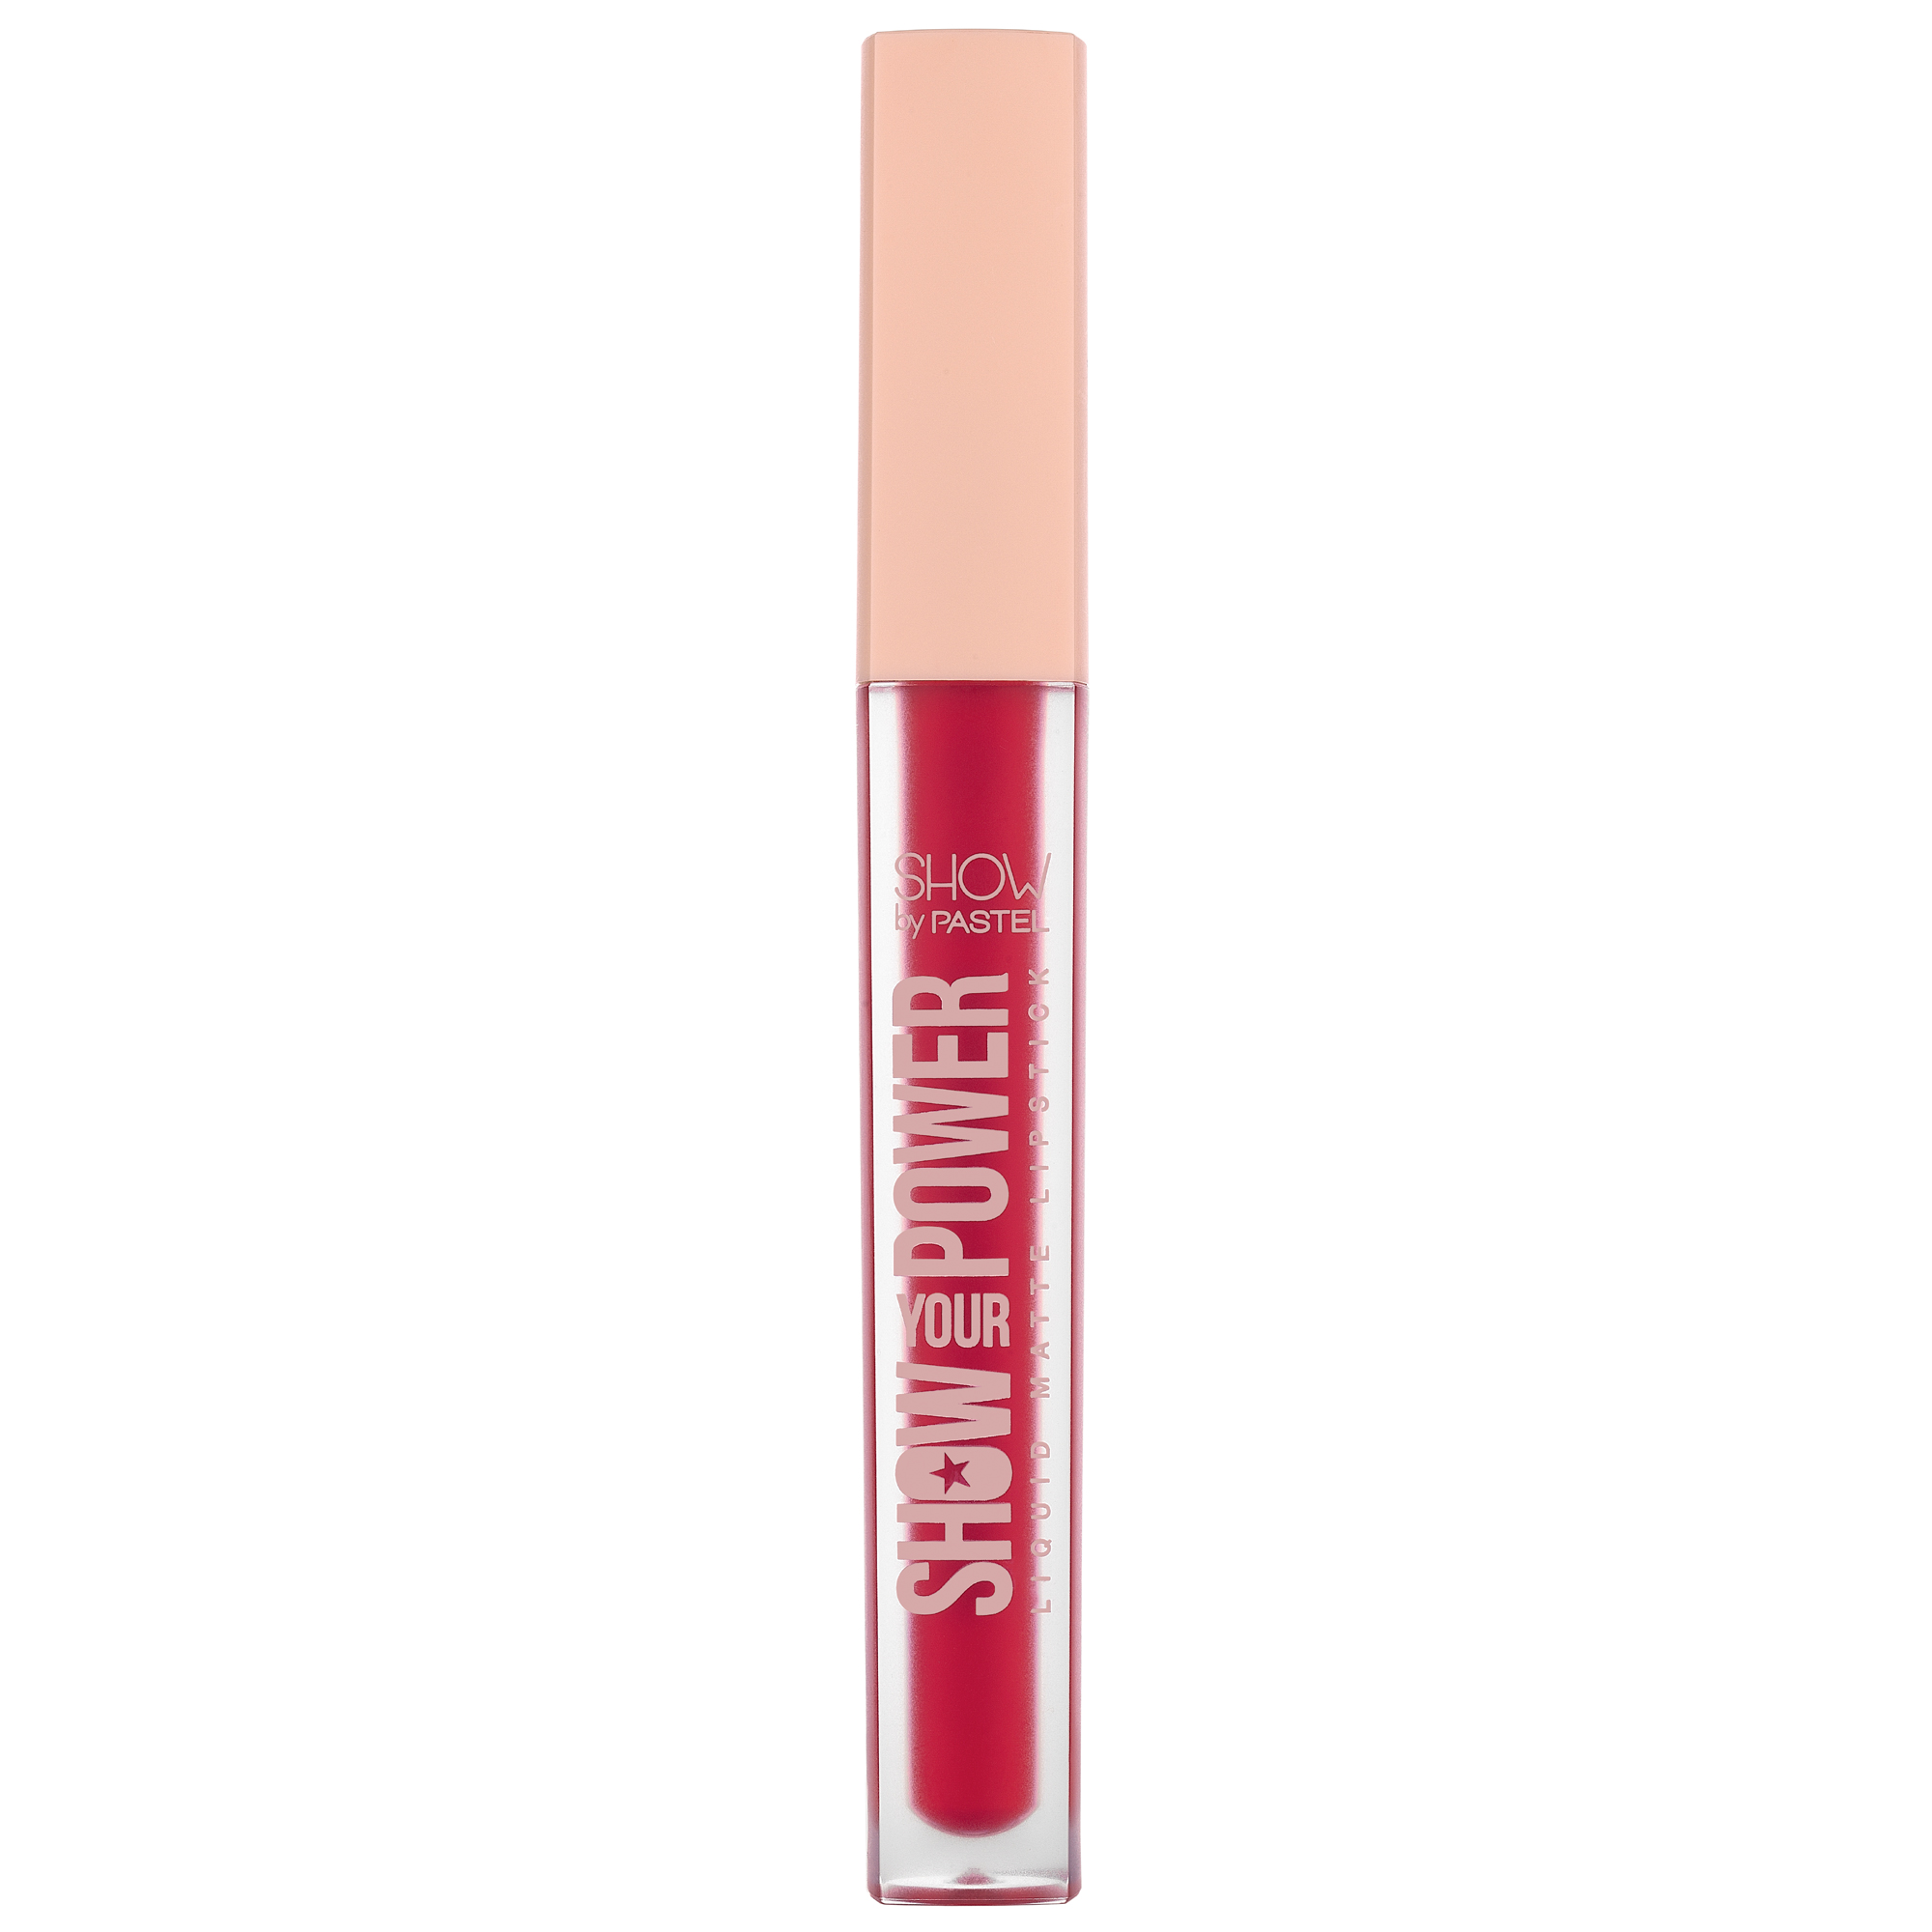 Pastel Show Your Power Liquid Matte Lipstick 607